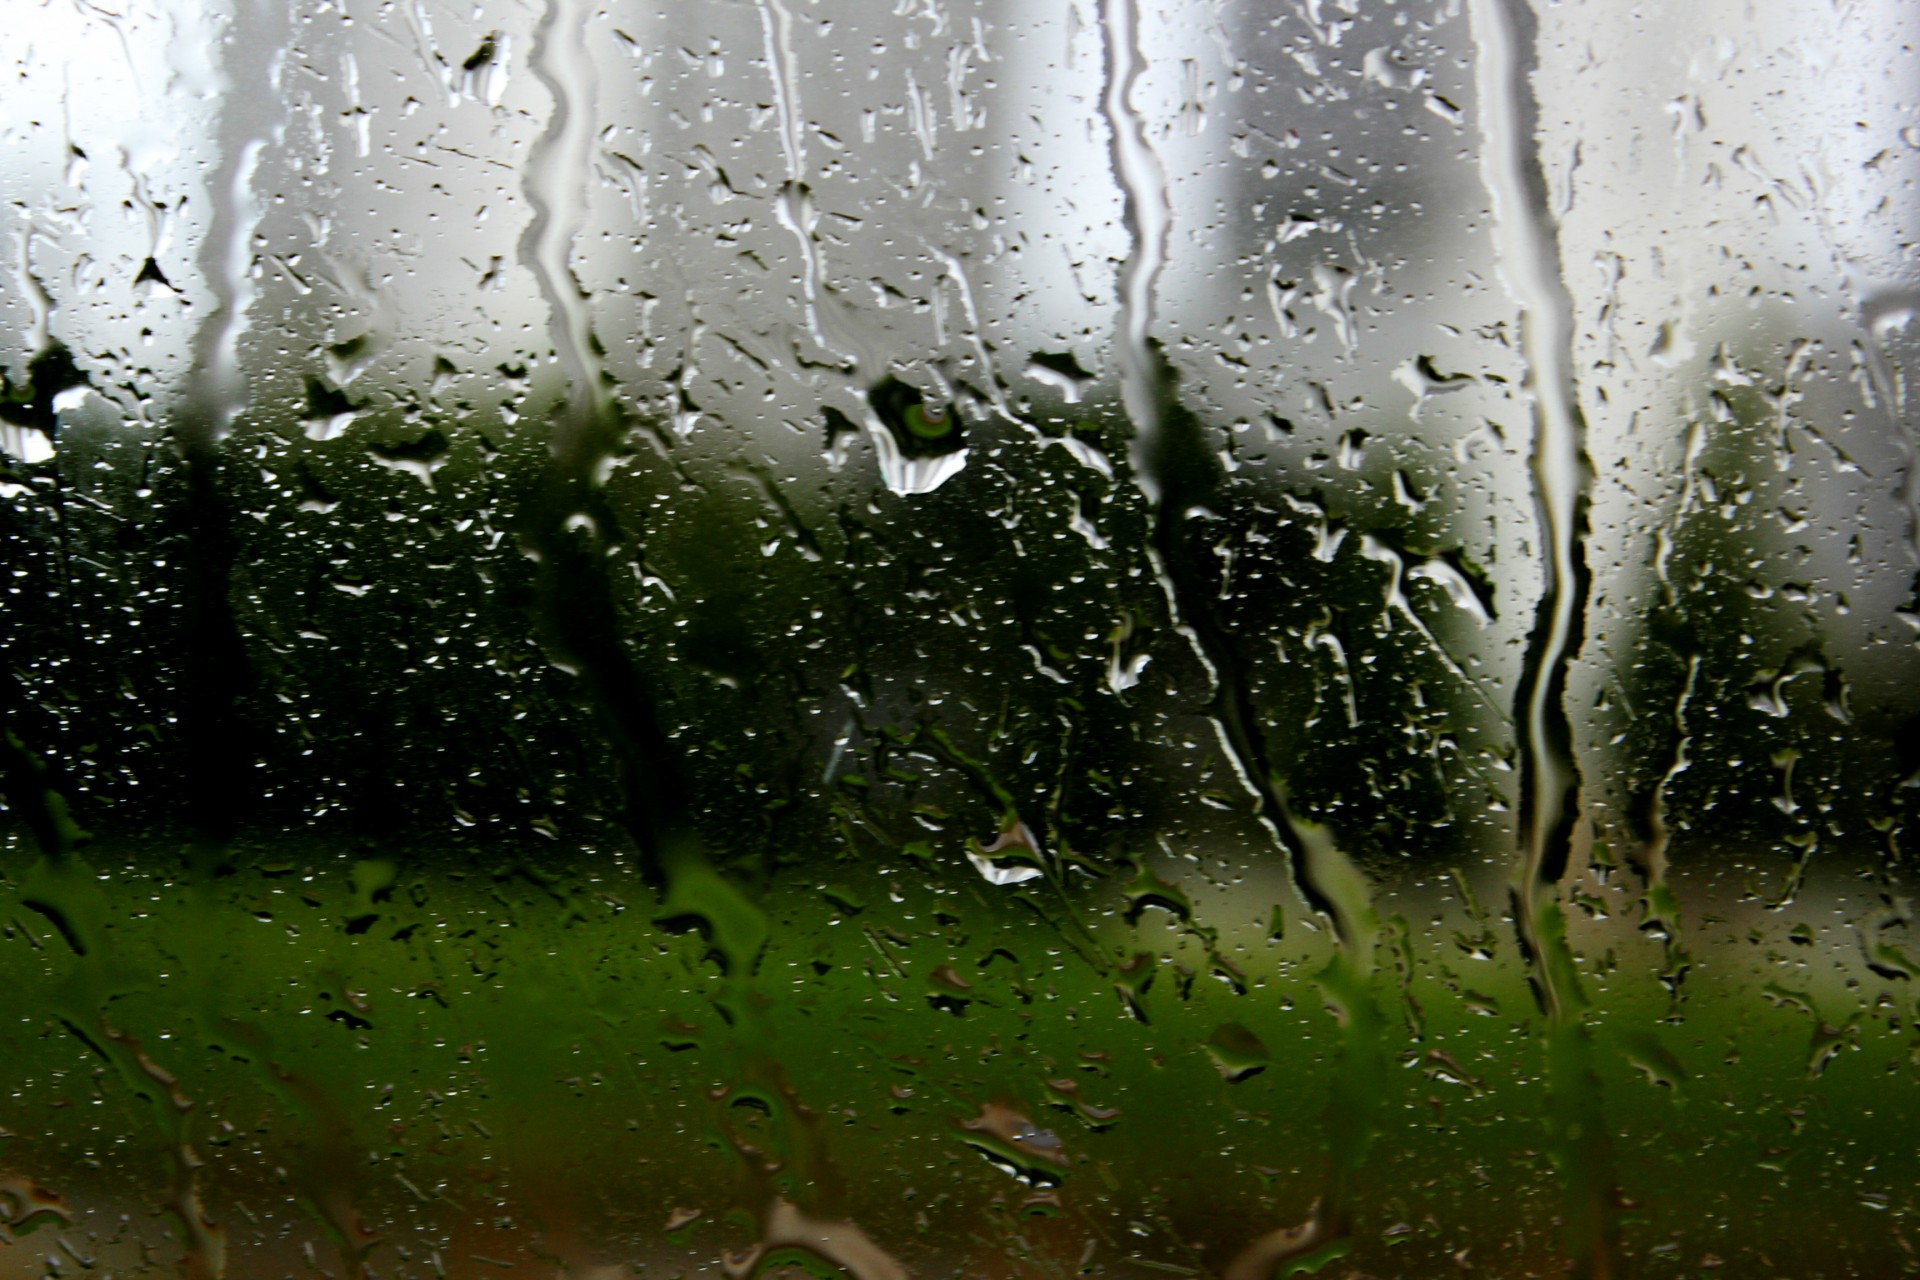 wet window glass free photo